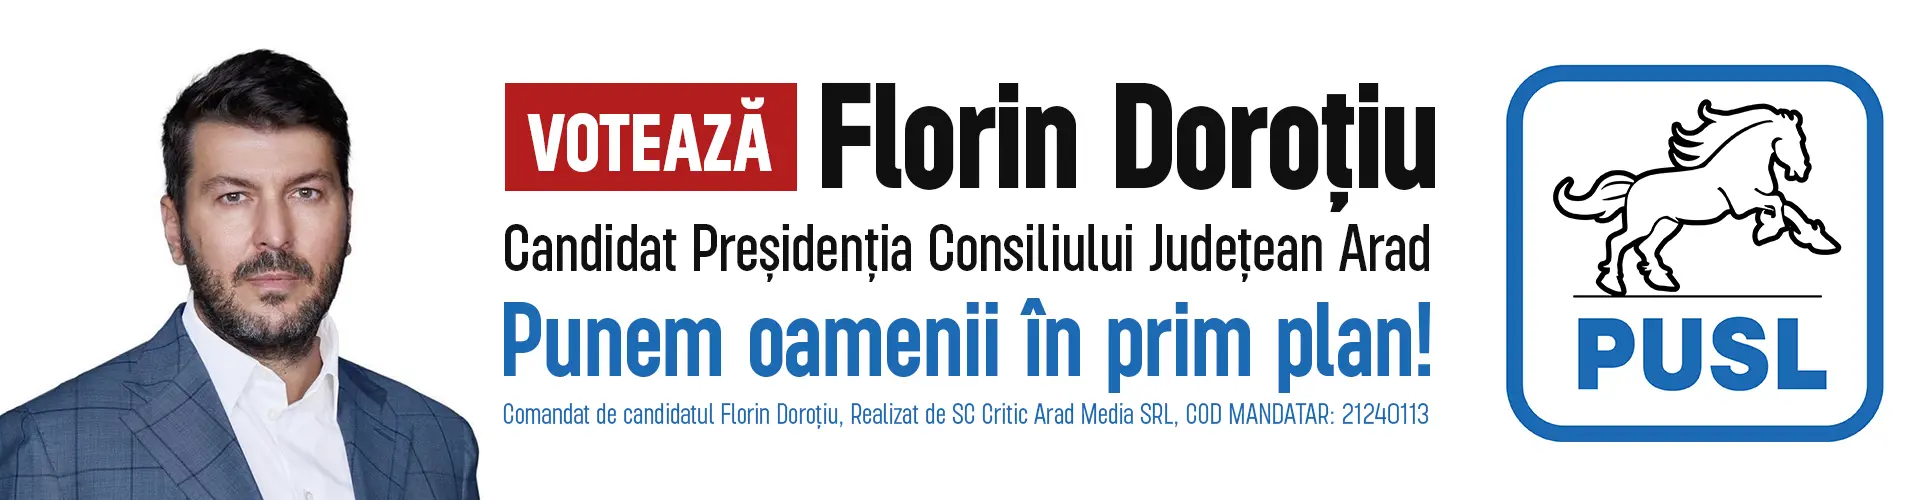 banner dorotiu florin 1